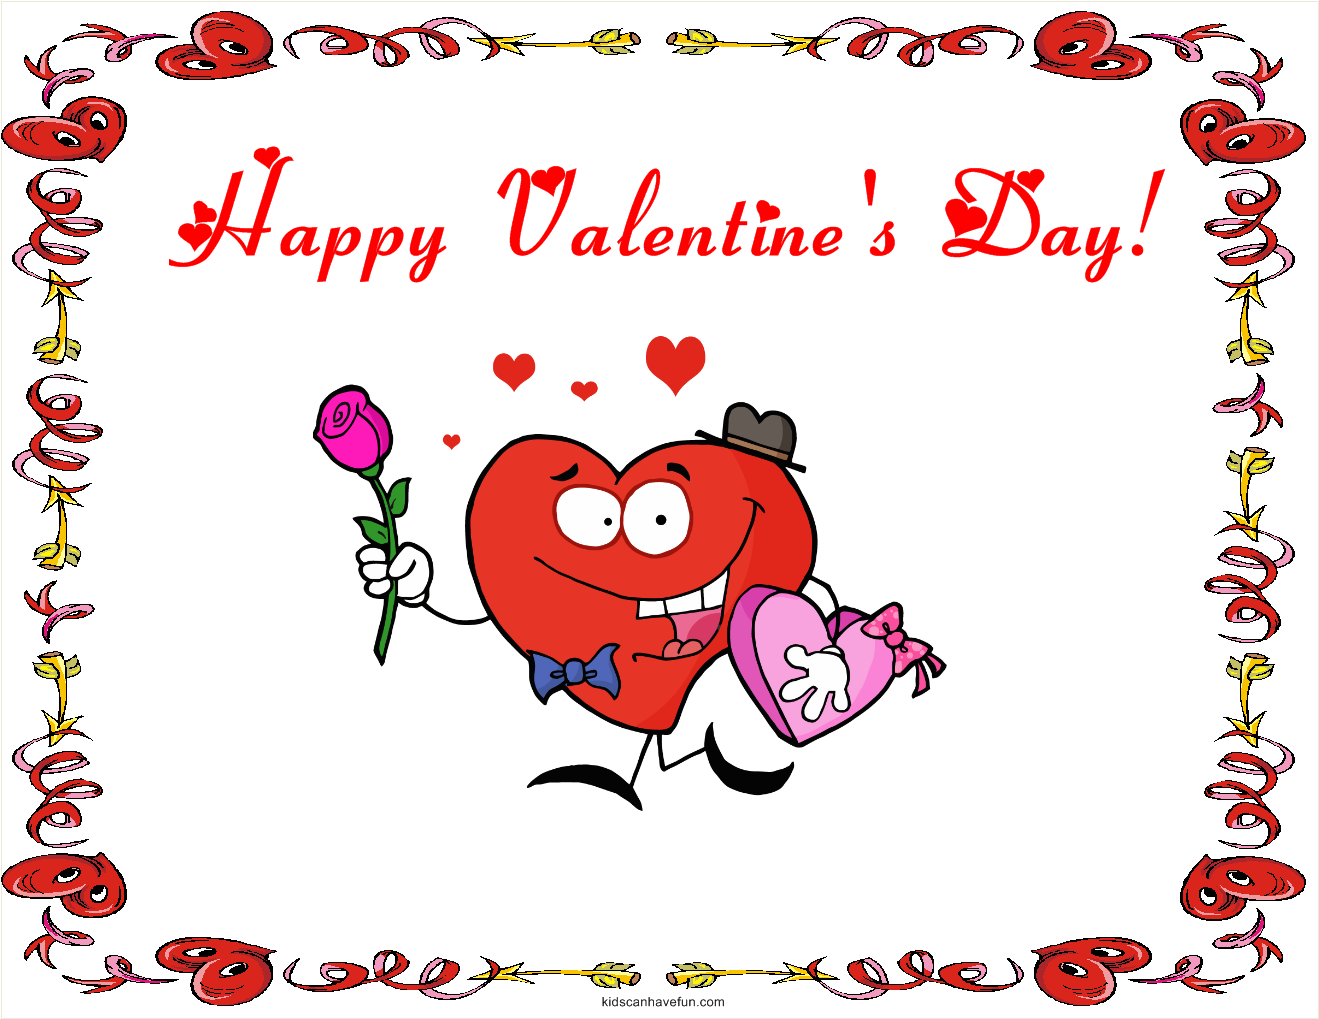 Valentine S Day Activities For Kids   Kidscanhavefun Blog